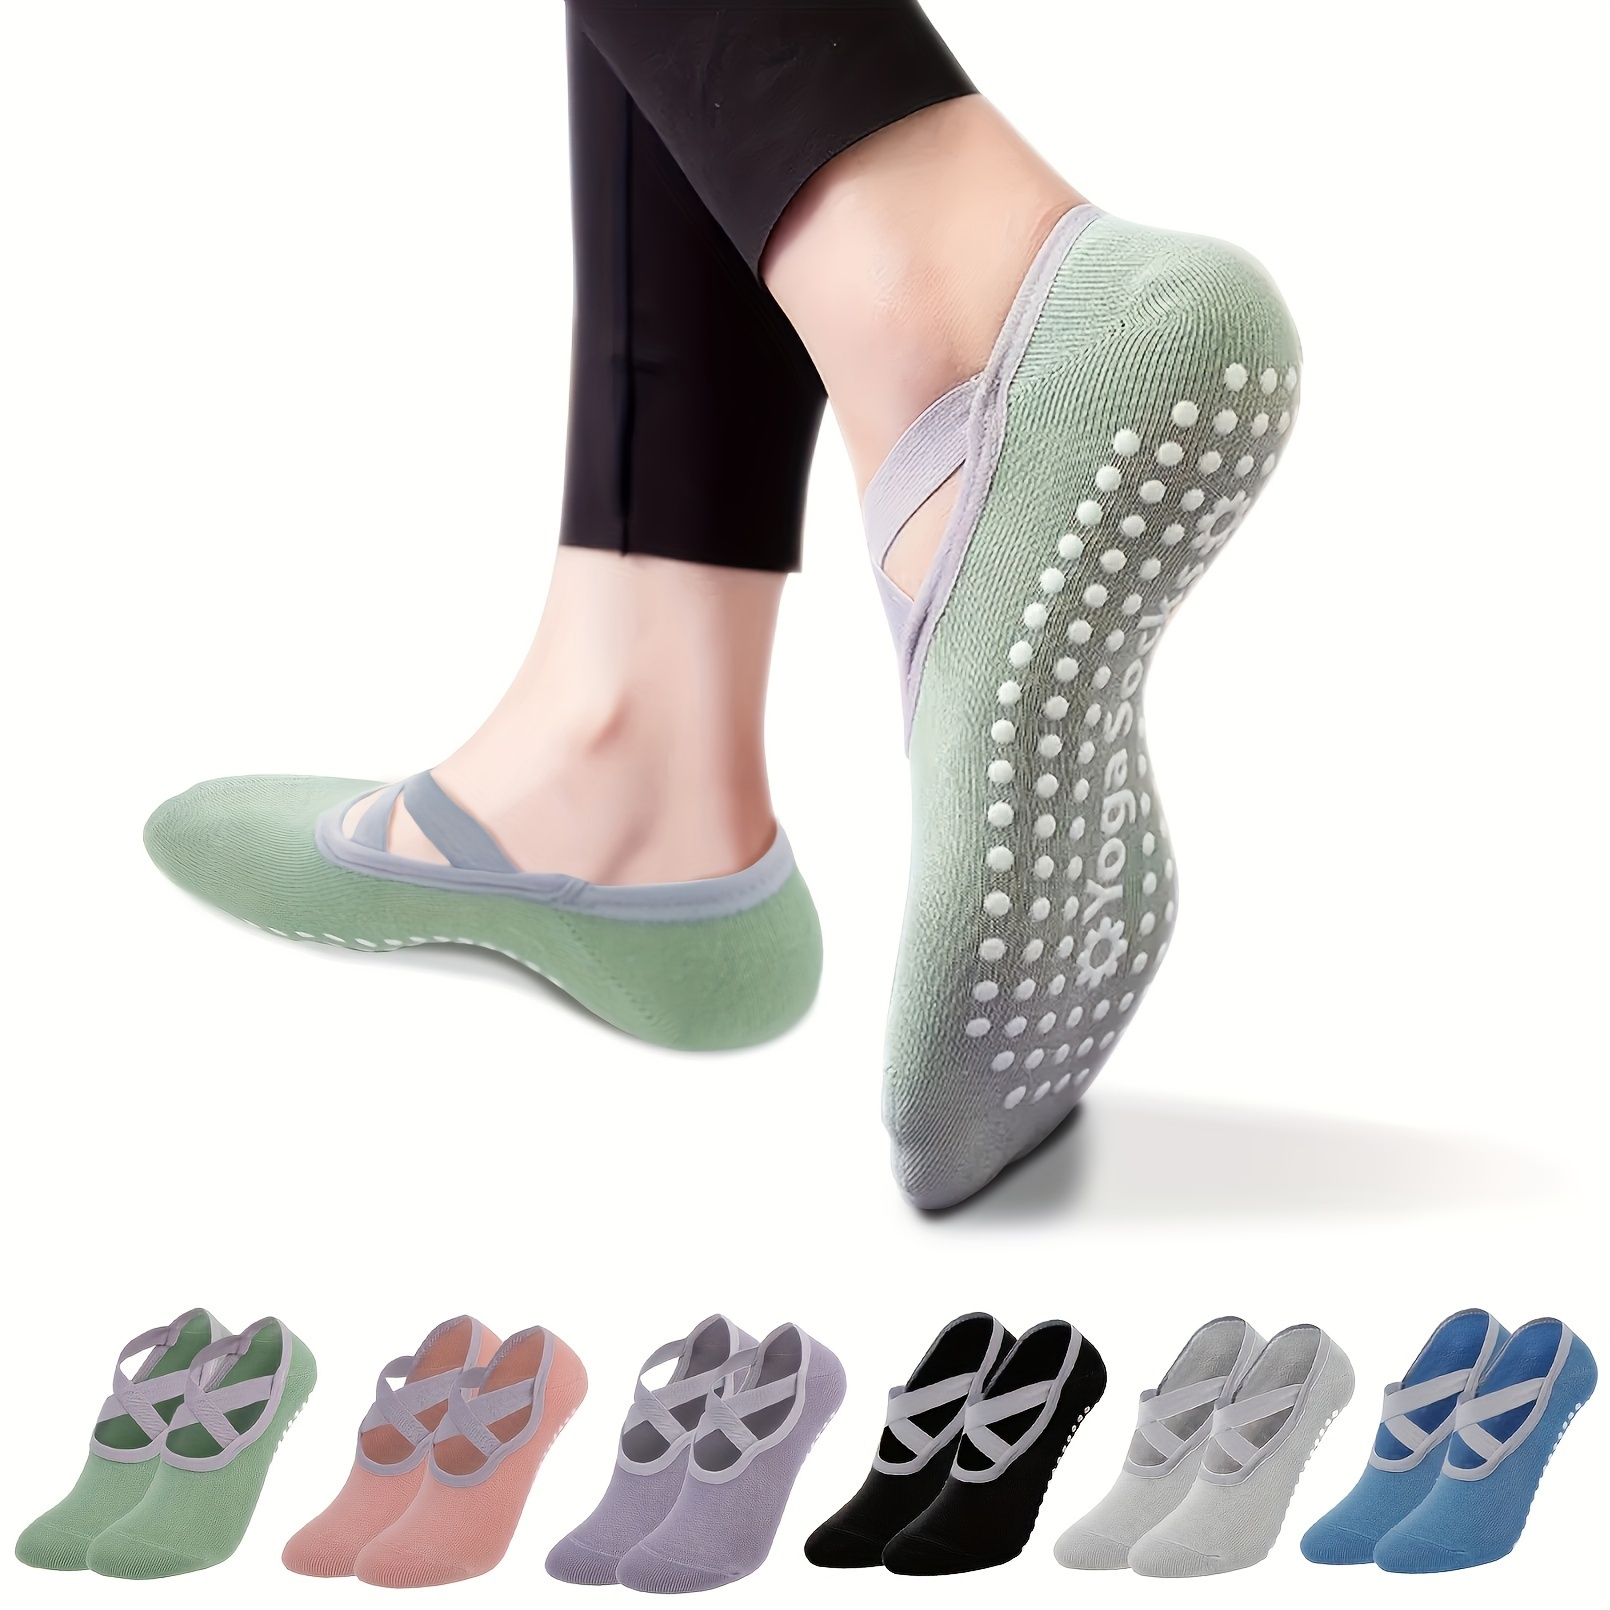 Buy Grip Socks Yoga Socks with Grips for Women Non Slip, Pilates